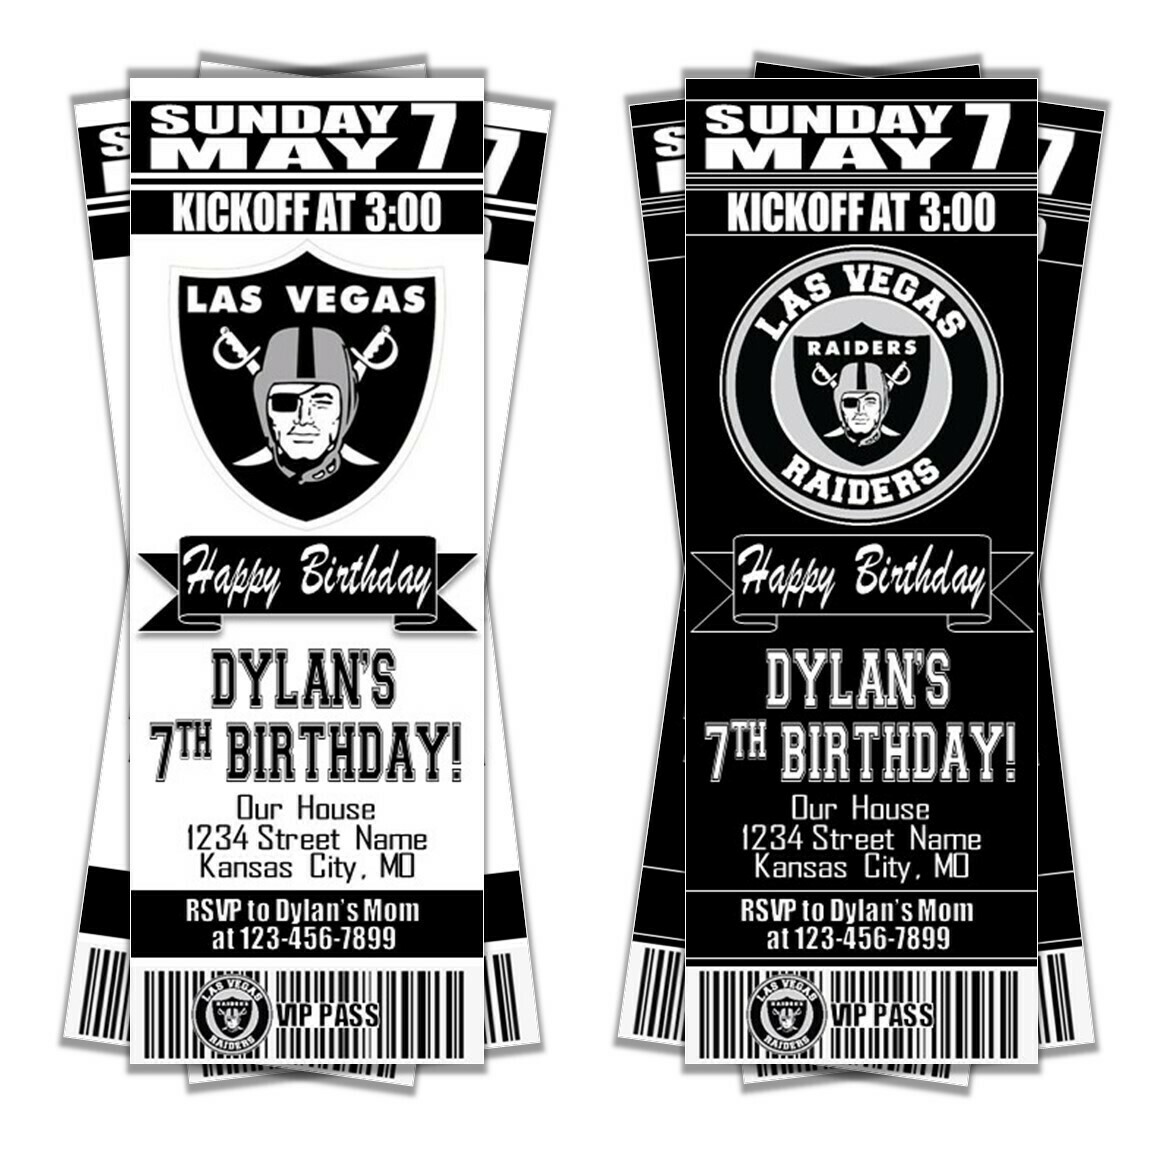 Las Vegas Raiders NFL Football Ticket Style Invitation